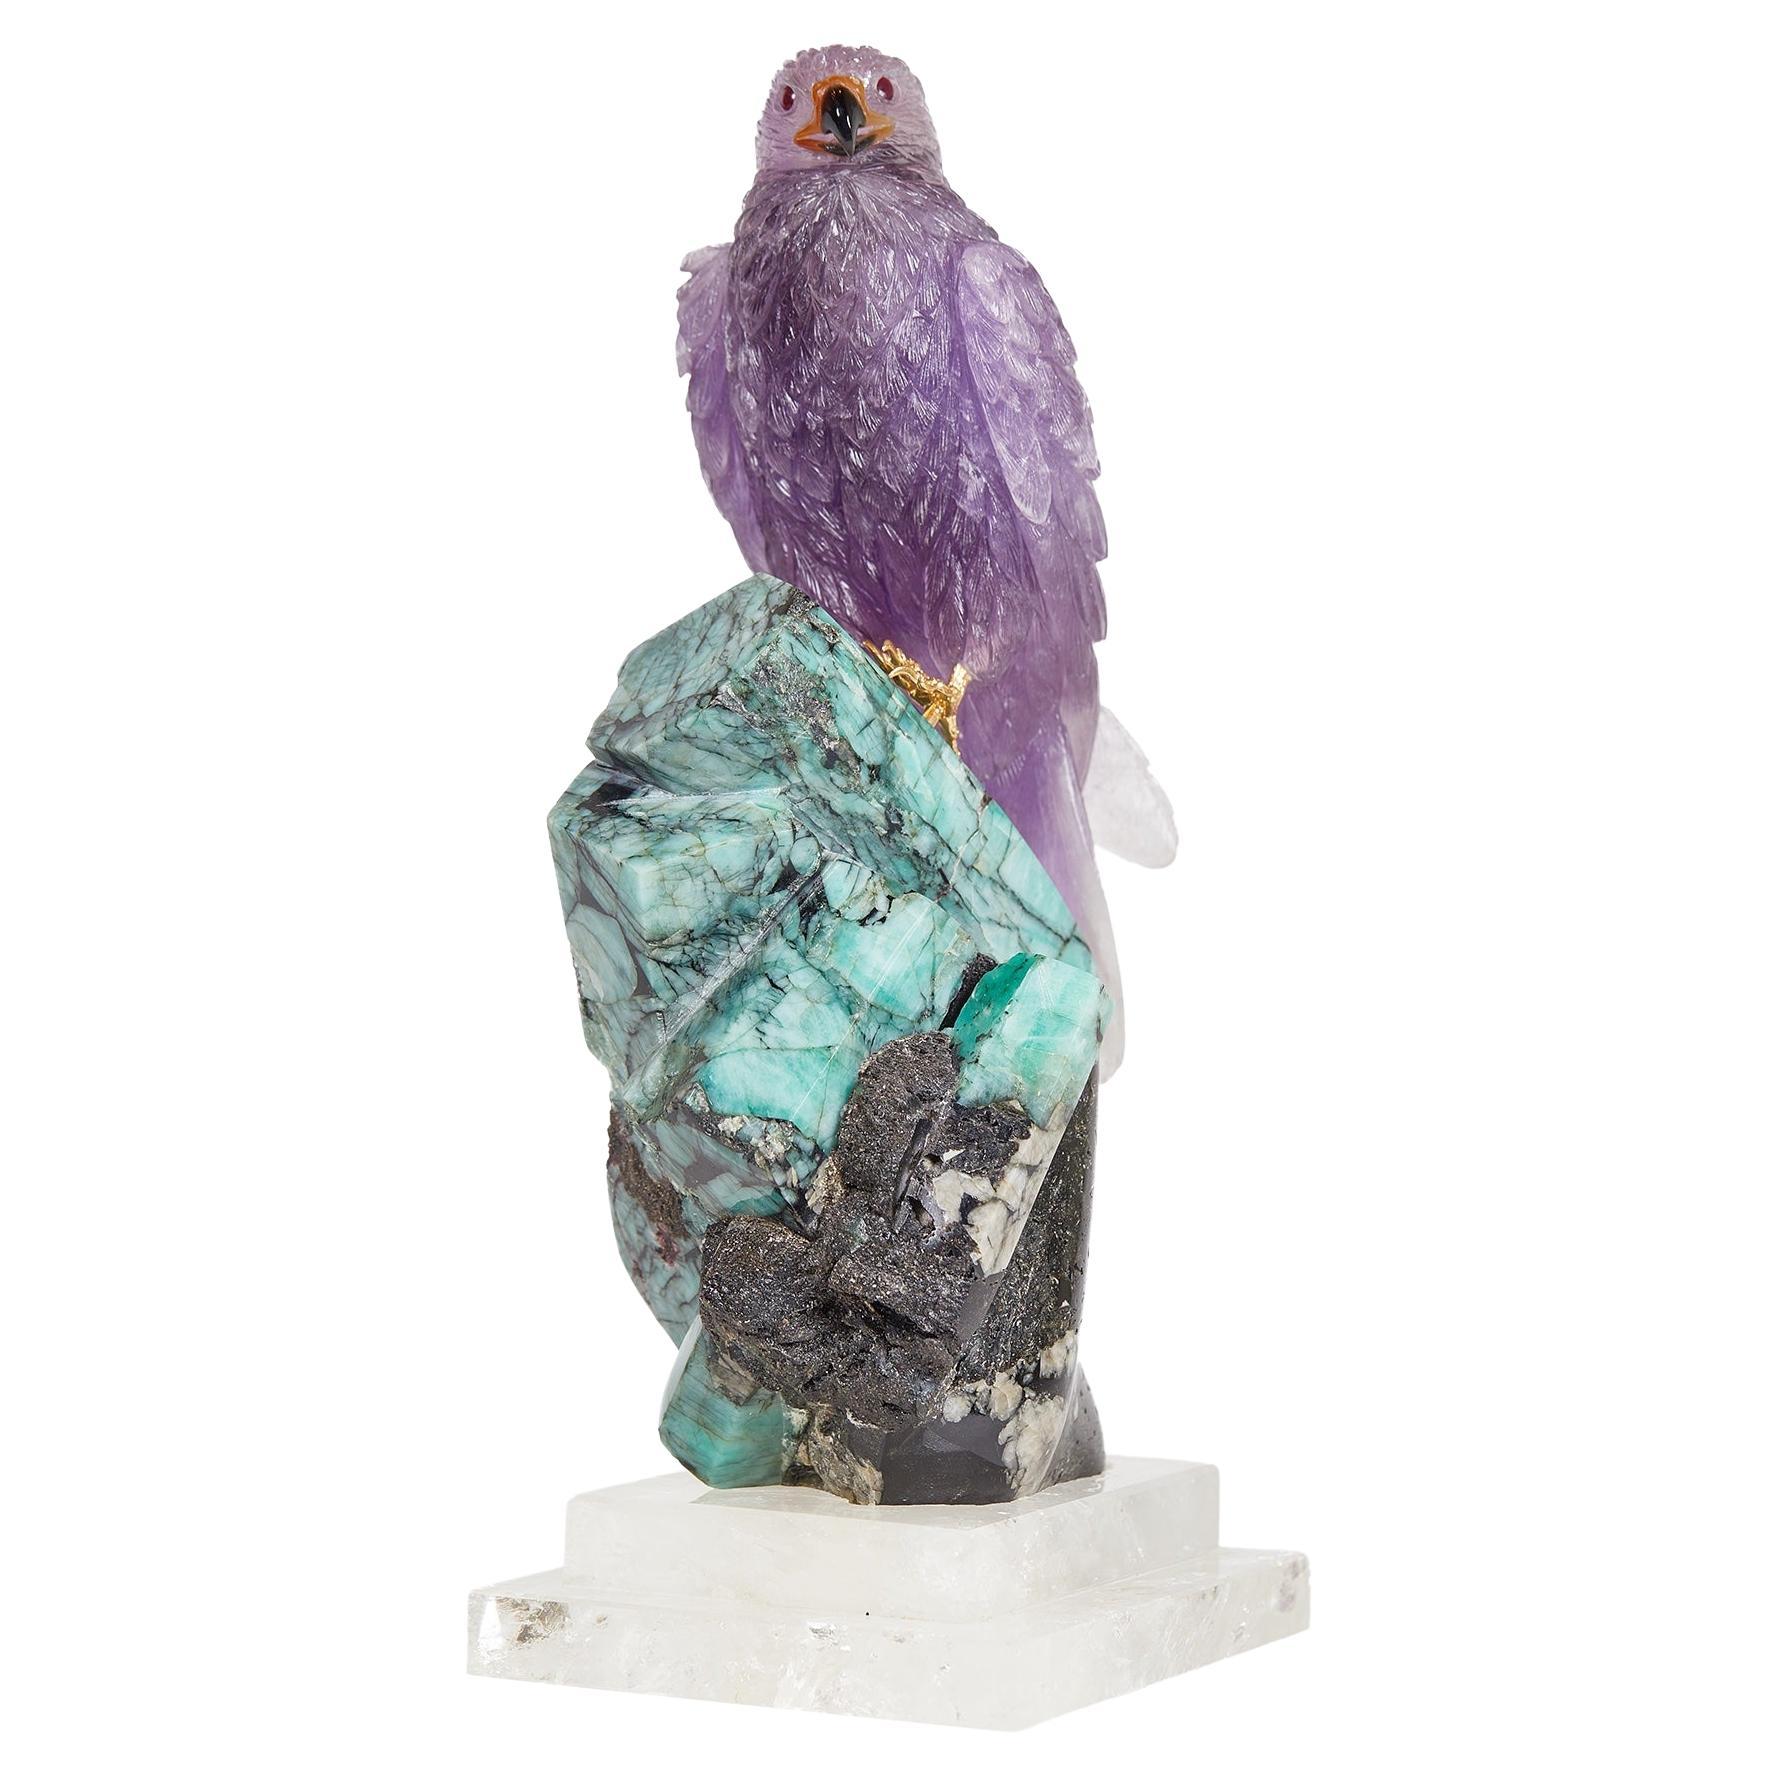 Sculpture unique en son genre de Falcon en améthyste sculptée